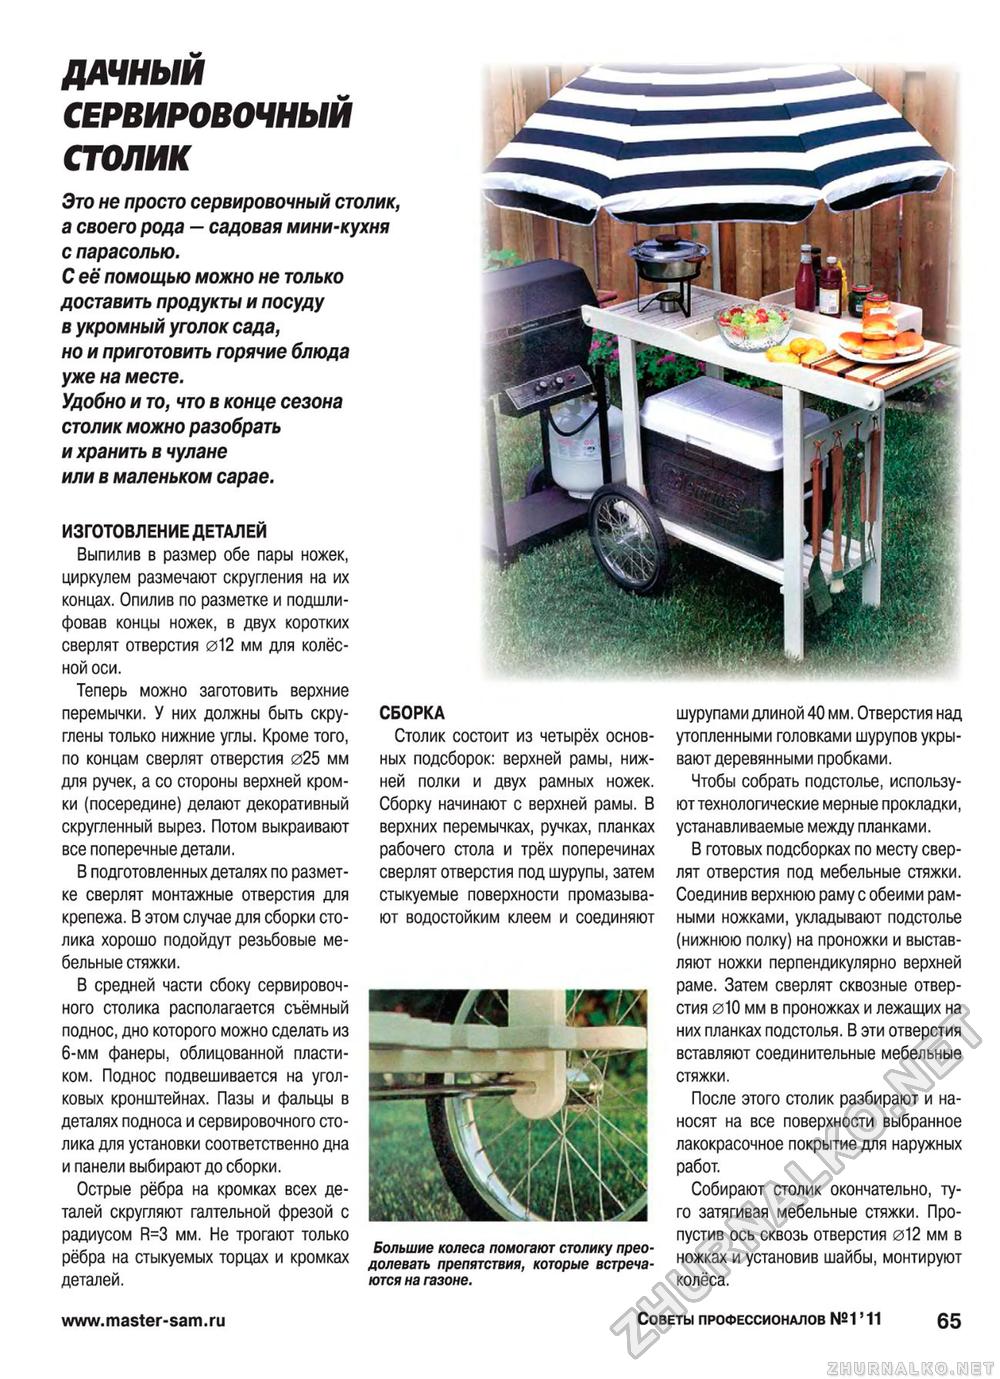 Советы профессионалов 2011-01, страница 65